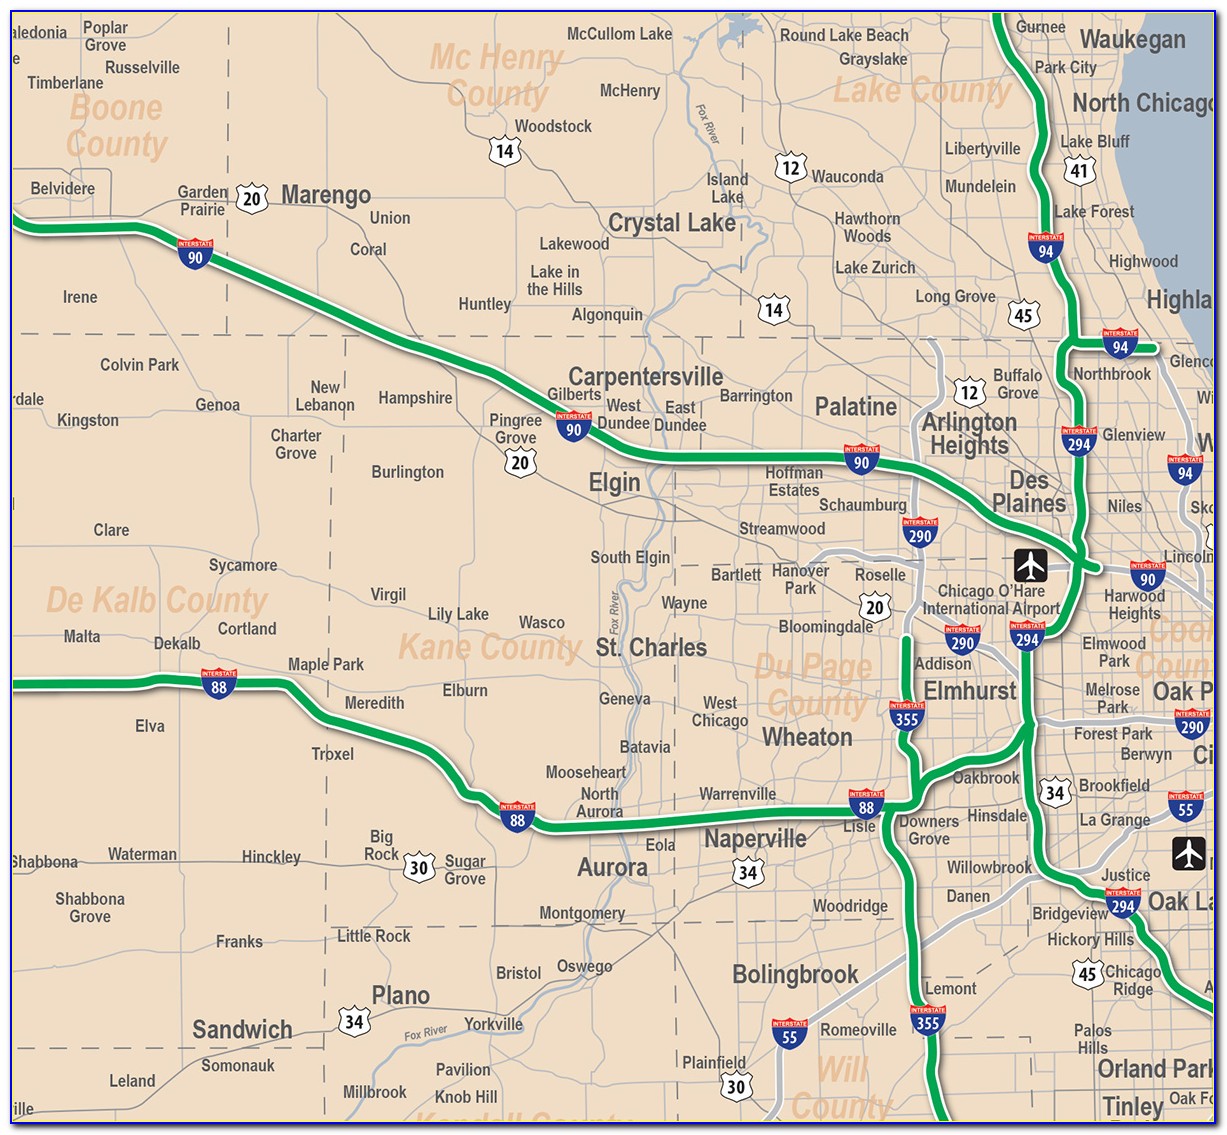 Illinois Tollway 490 Map